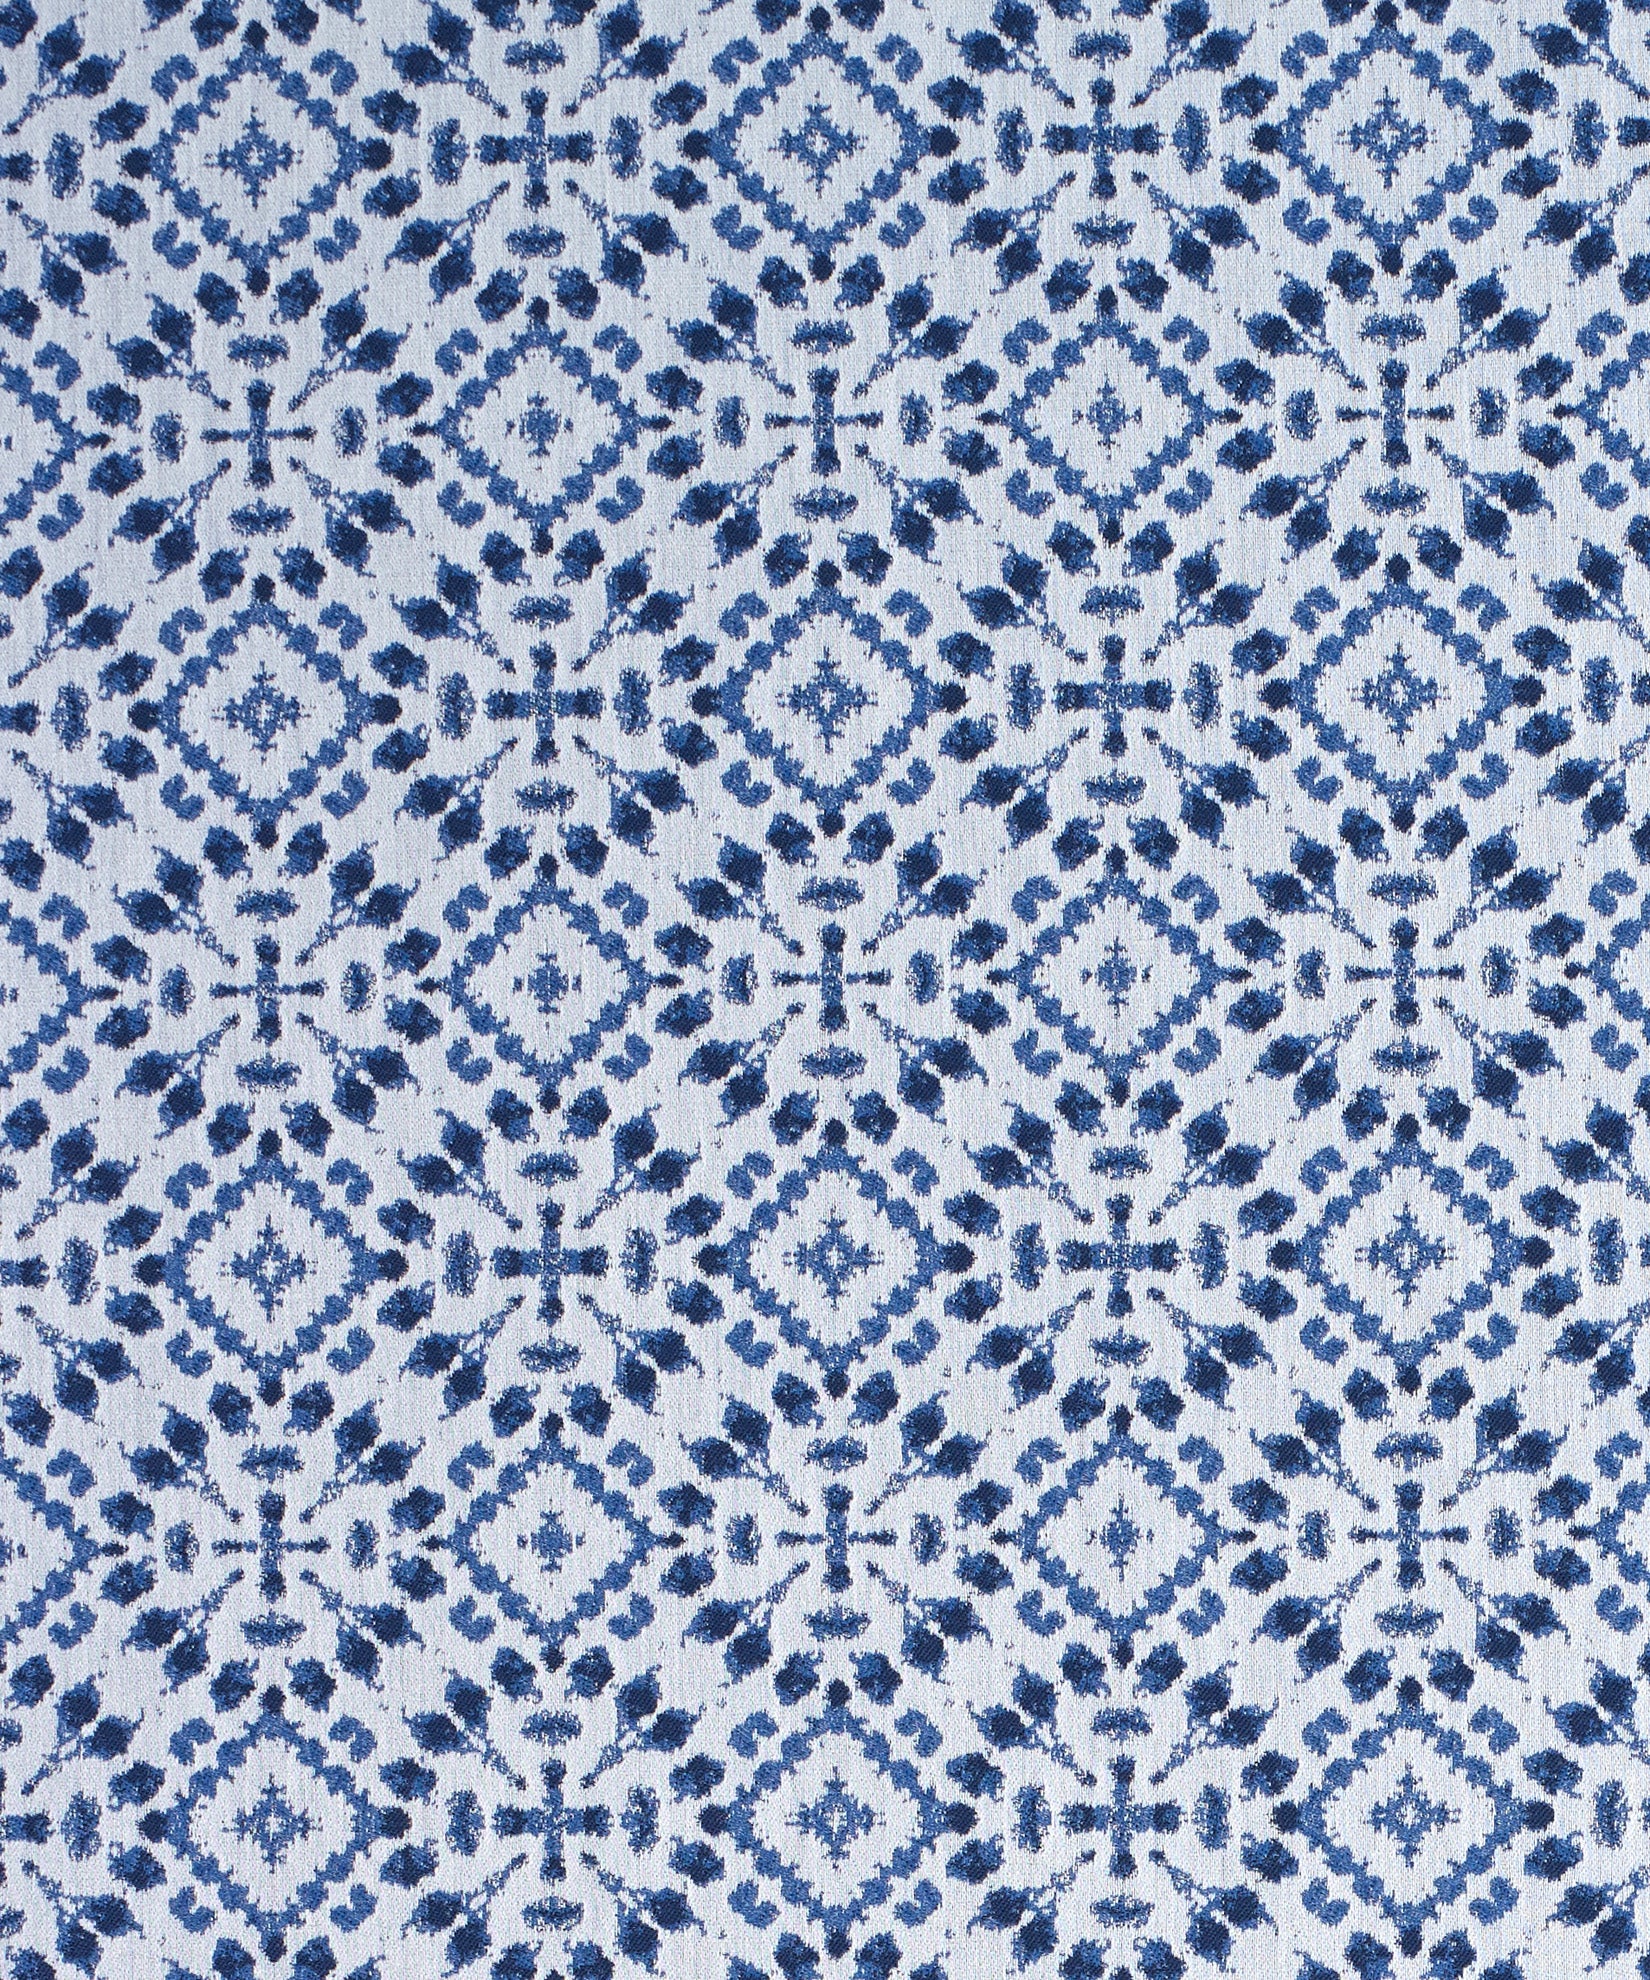 Shibori Fabric in color Indigo Blue